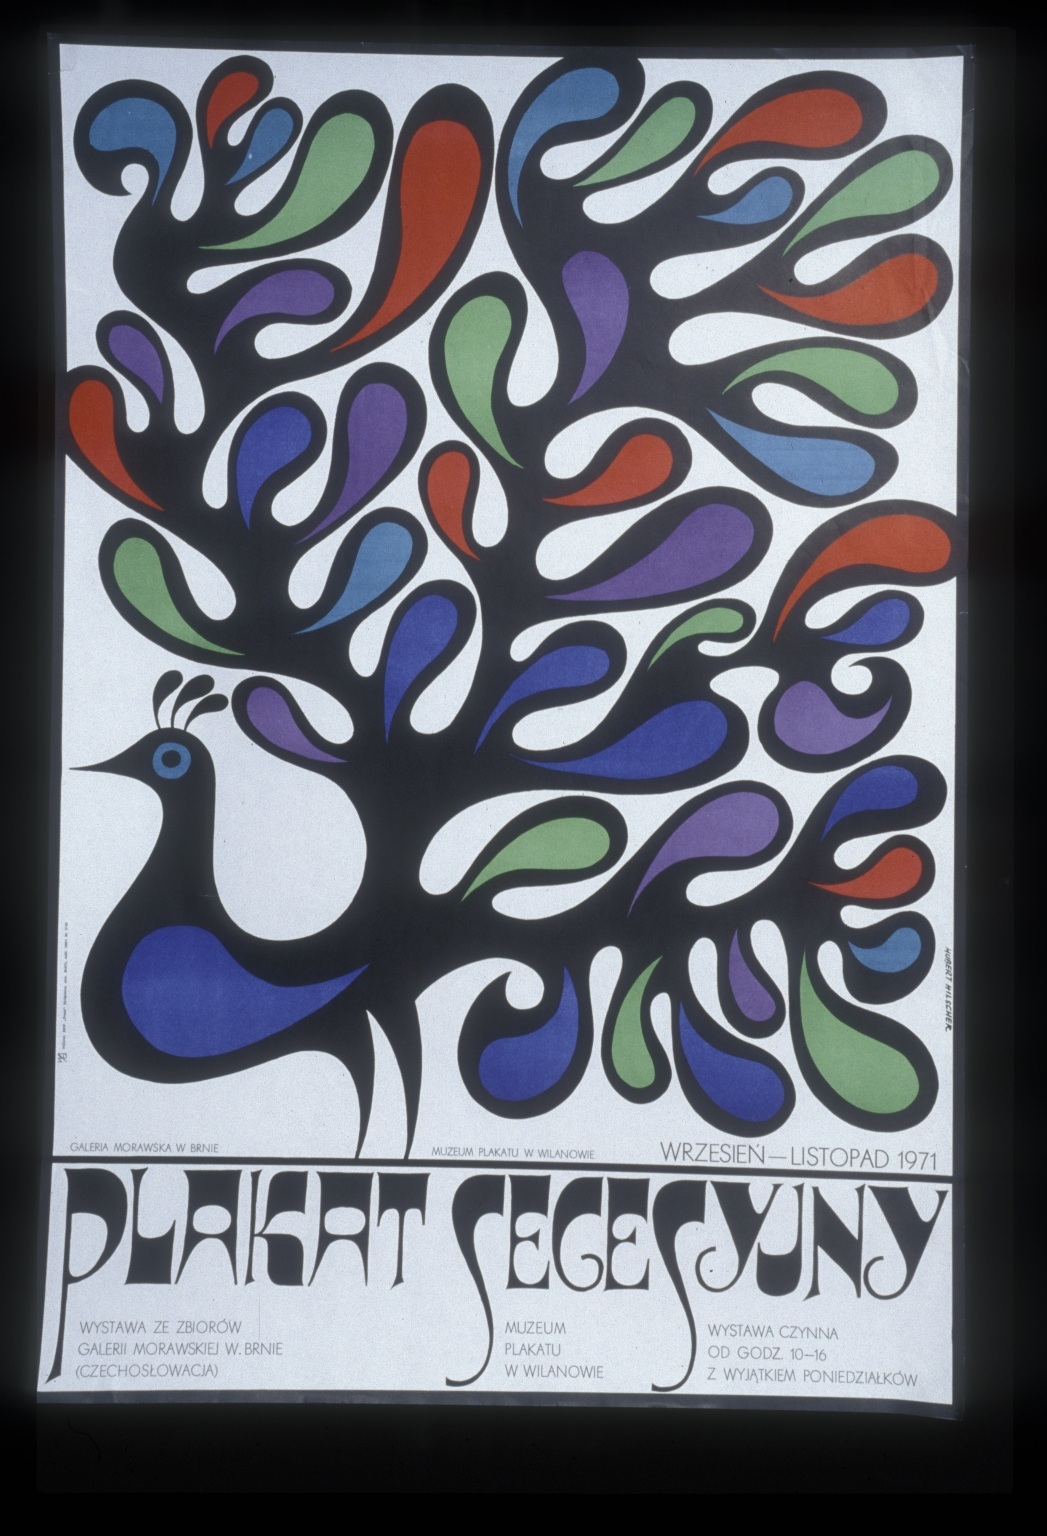 Plakat secesyjny: Muzeum Plakatu w Wilanowie, wrzesin - listopad 1971 : wystawa ze zbiorow Galerii Morawskiej w Brnie (Czechoslowacja)